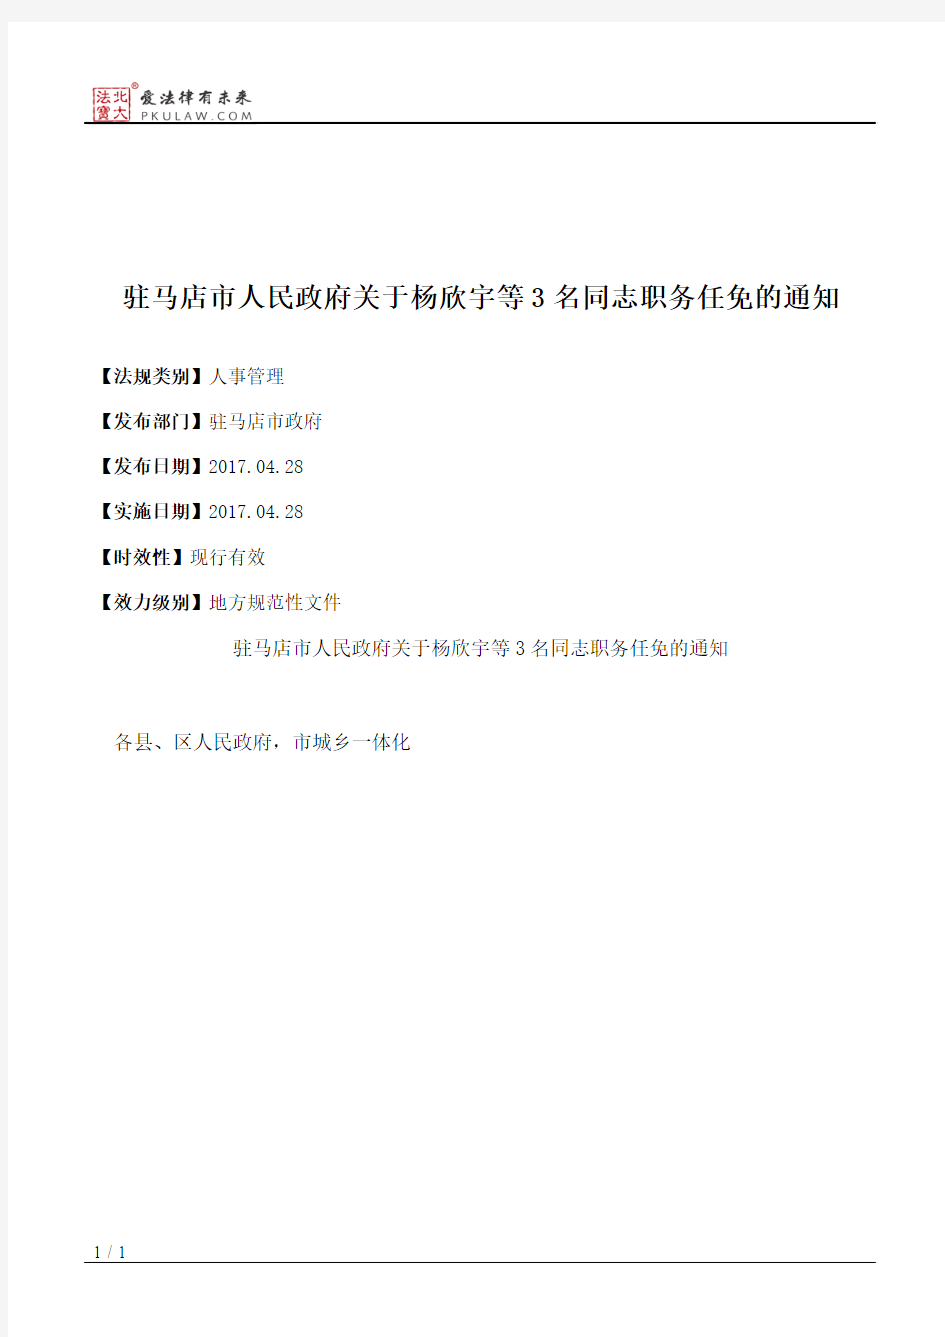 驻马店市人民政府关于杨欣宇等3名同志职务任免的通知